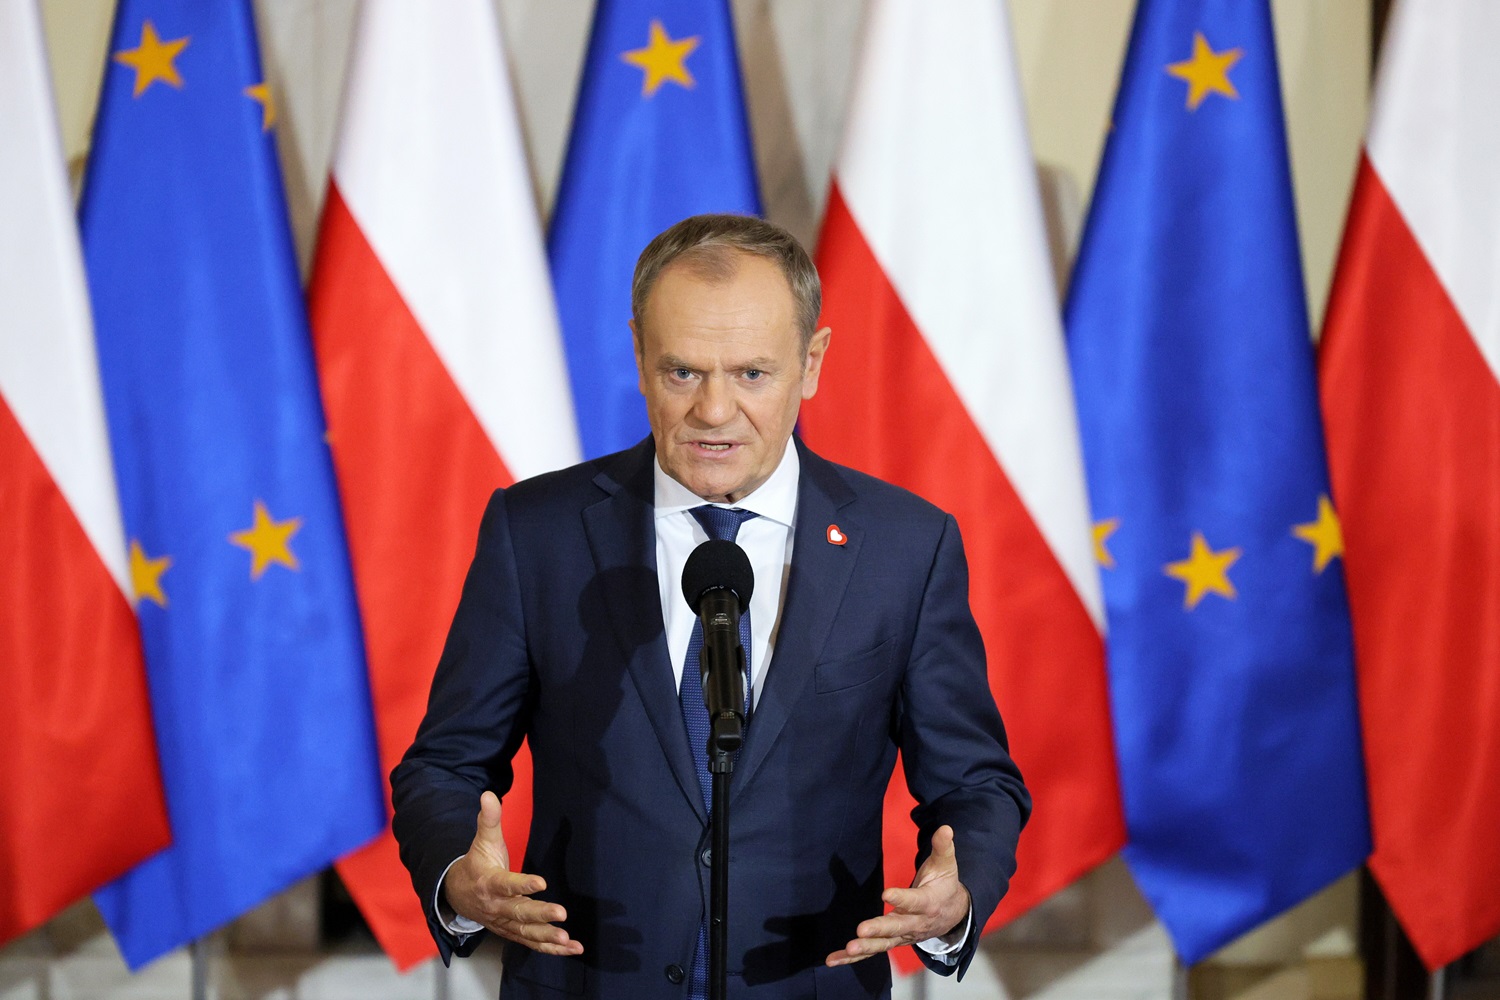 D. Tuskas: nuo Lenkijos priklauso visos Europos saugumas